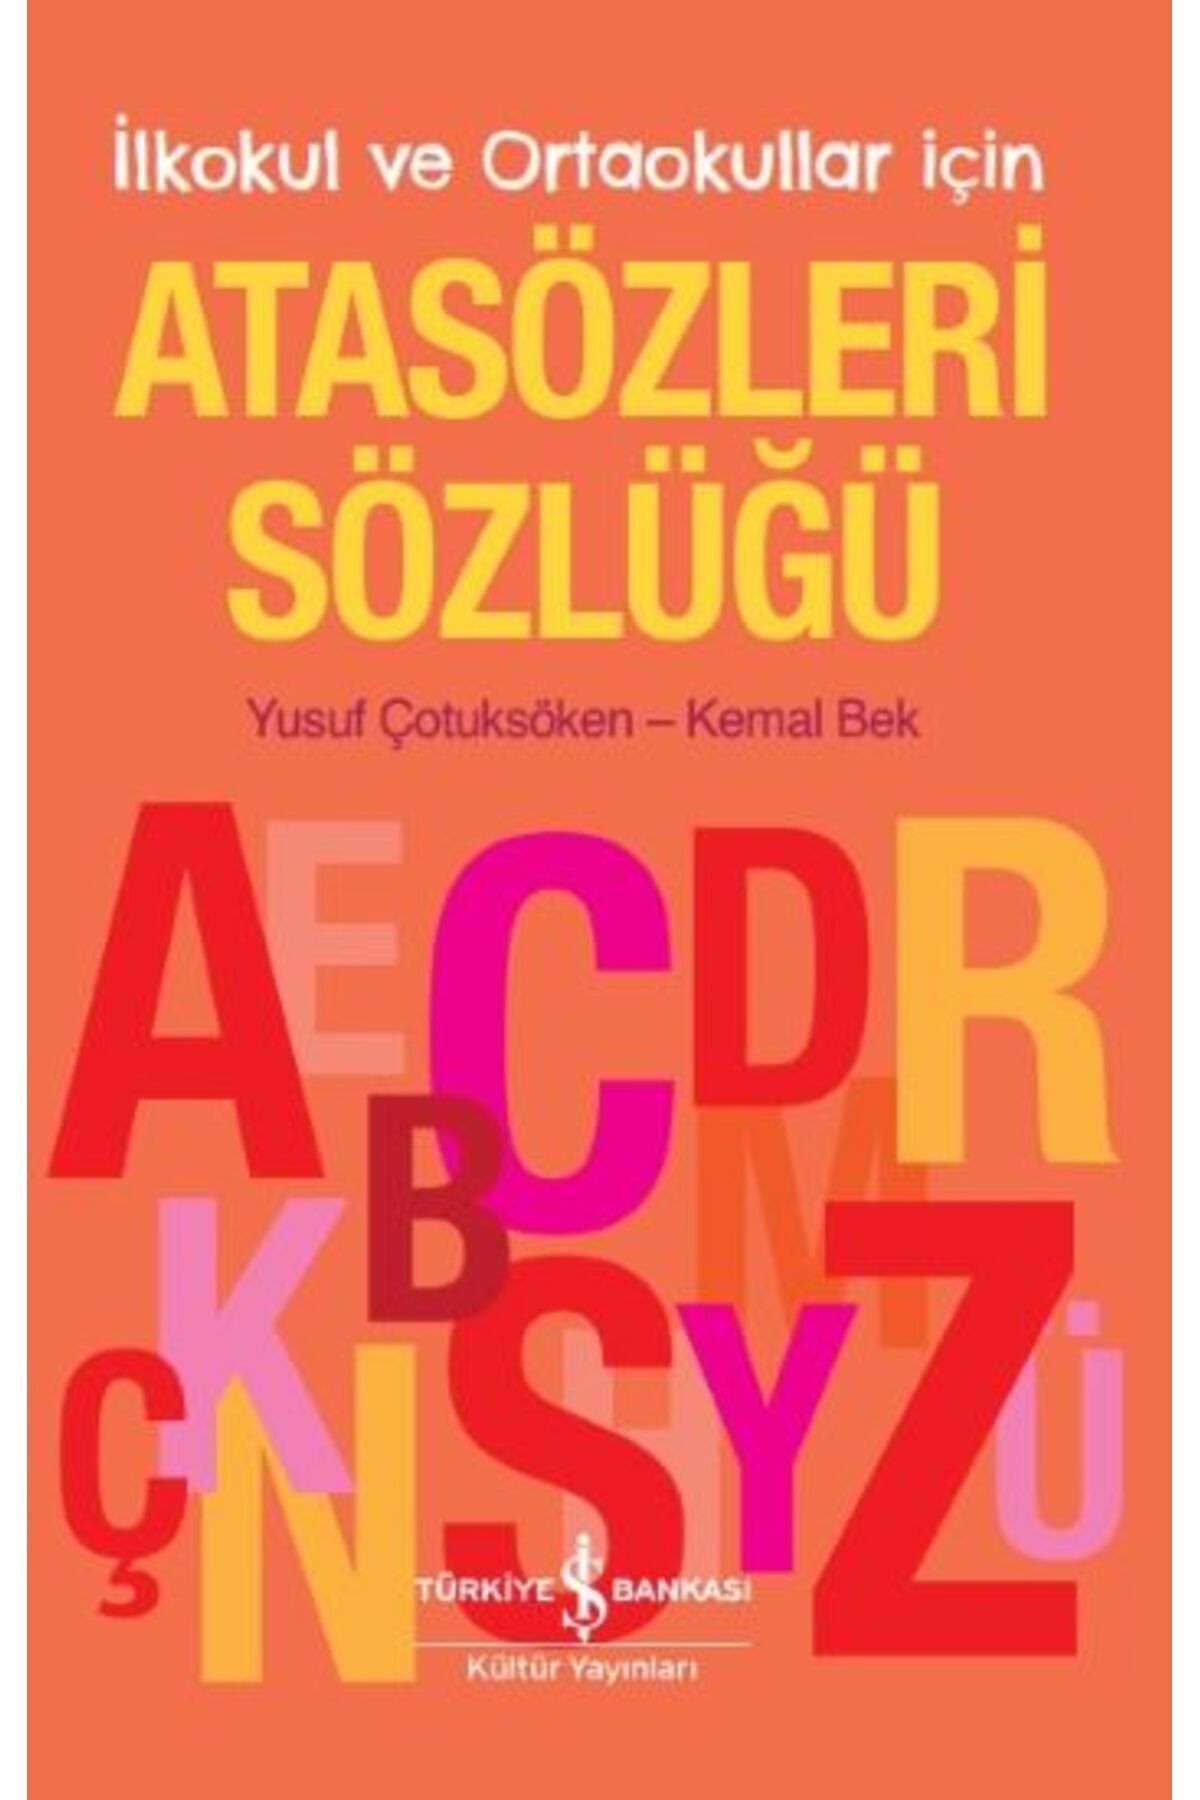 Türkiye İş Bankası Kültür Yayınları Atasözleri Sözlüğü – Ilkokul Ve Ortaokullar Için